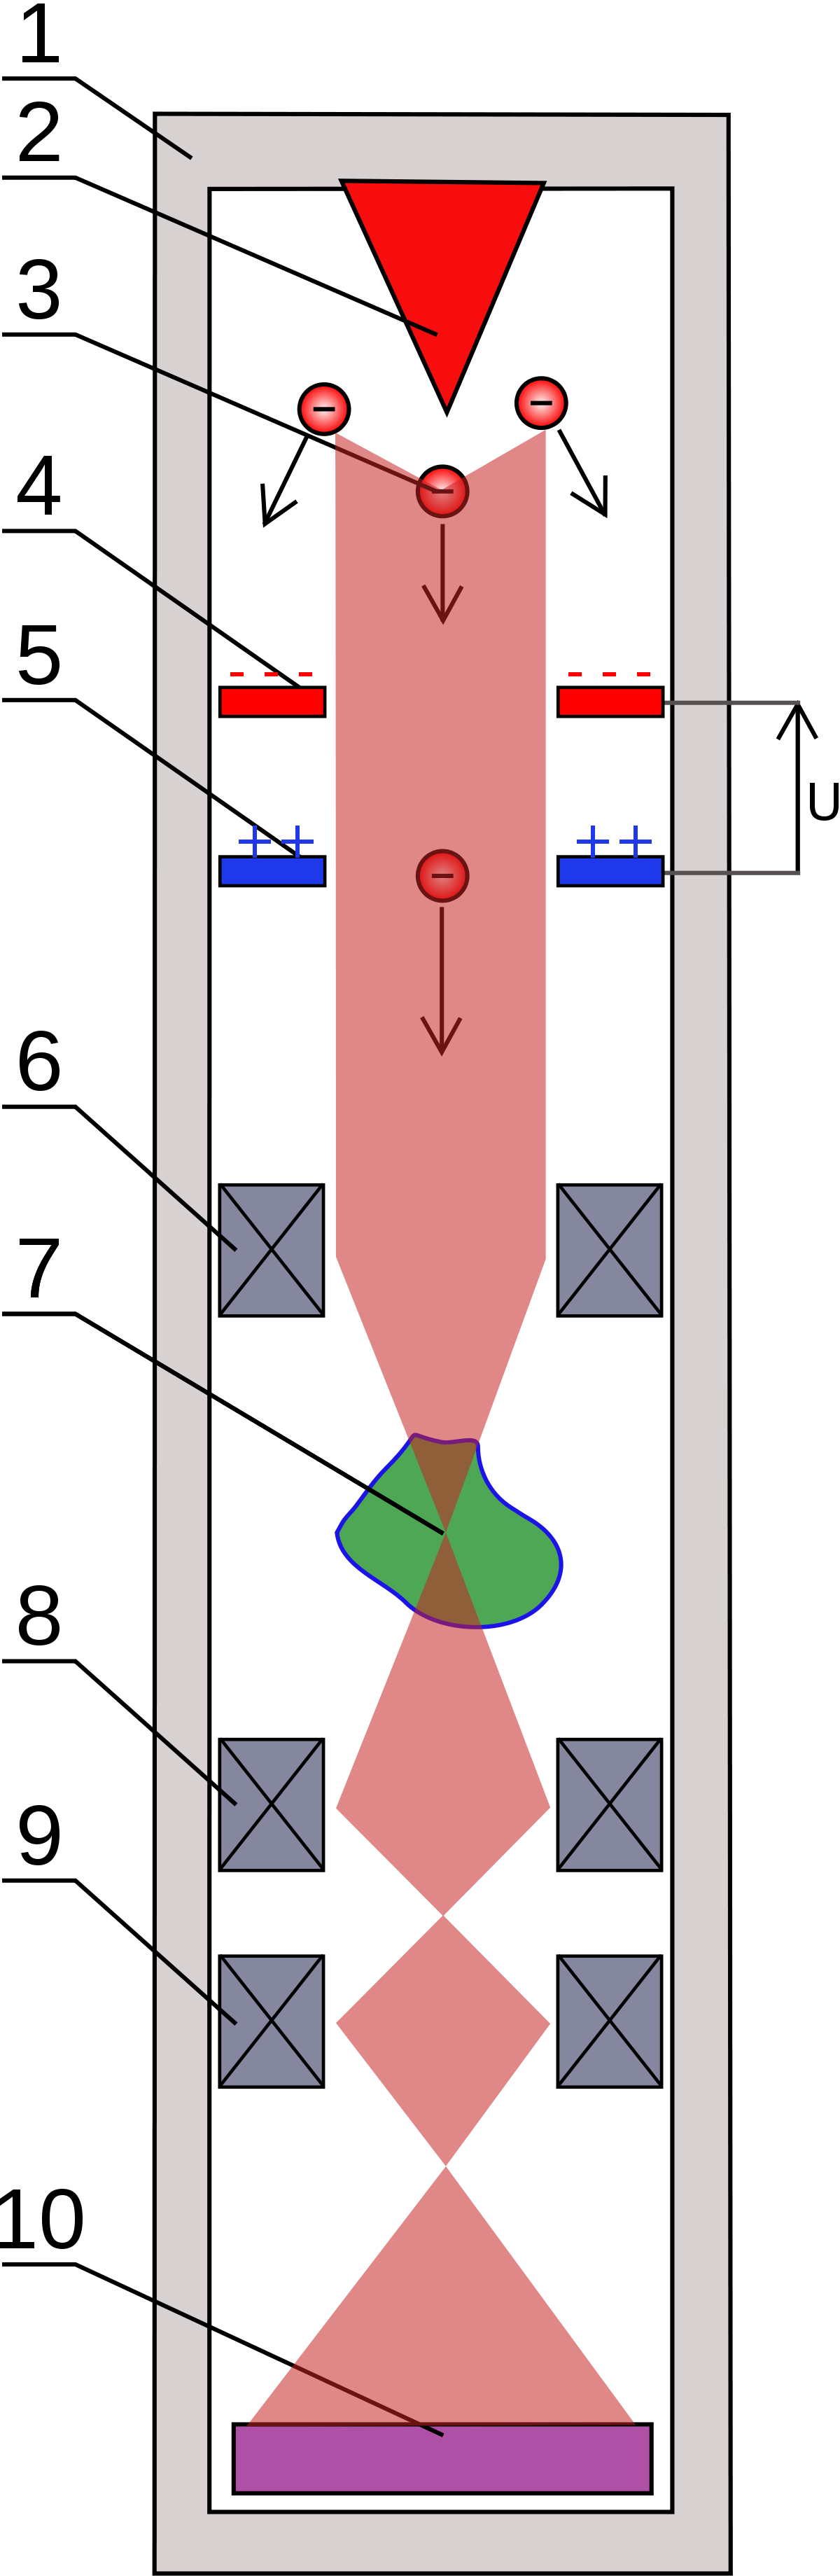 Schéma de principe d'un microscope électronique en transmission